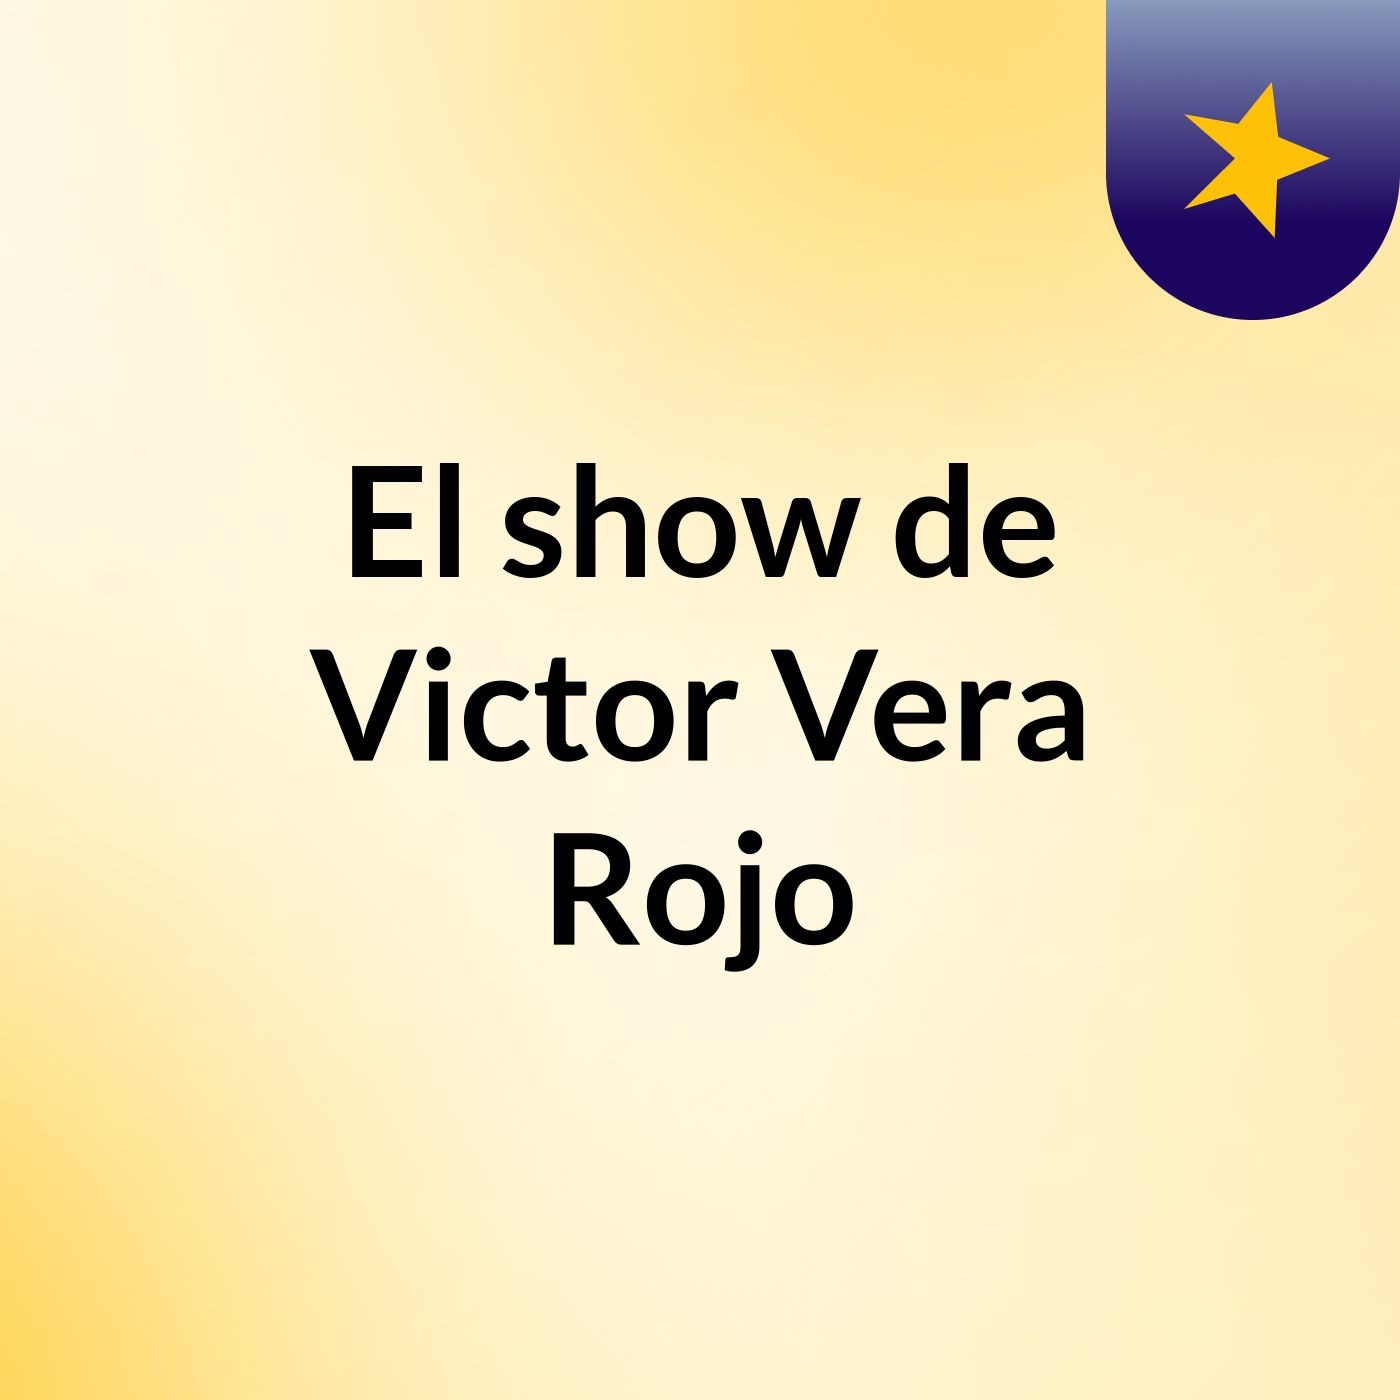 Episodio 2 - El show de Victor Vera Rojo